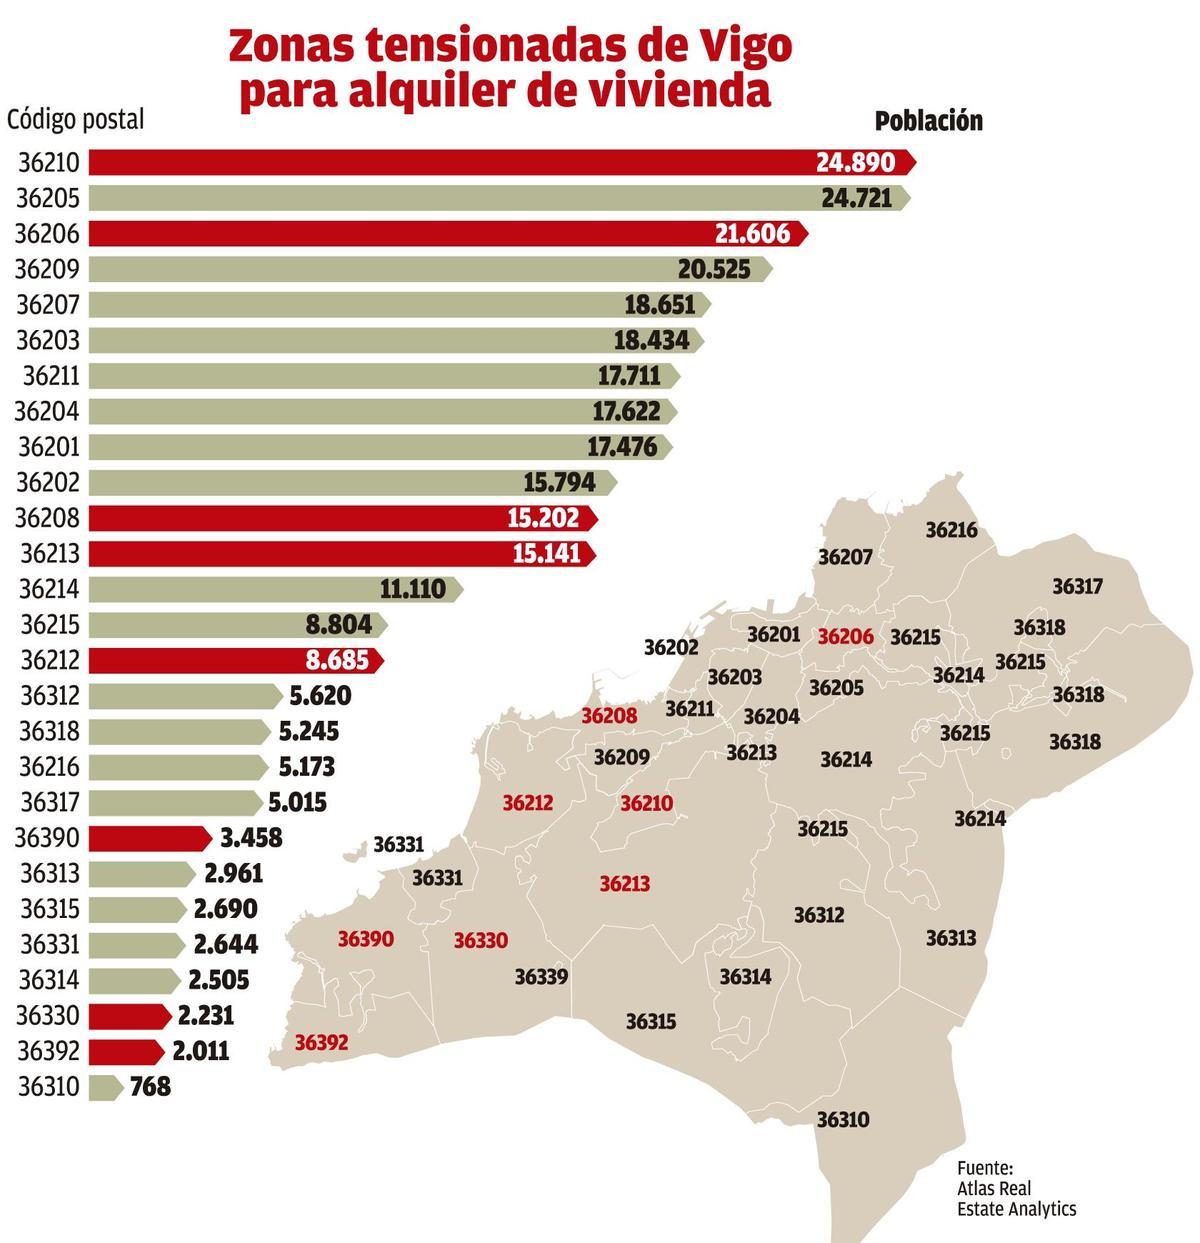 Zonas tensionadas de Vigo, según la consultora inmobiliaria Atlas Real Estate Analytics.